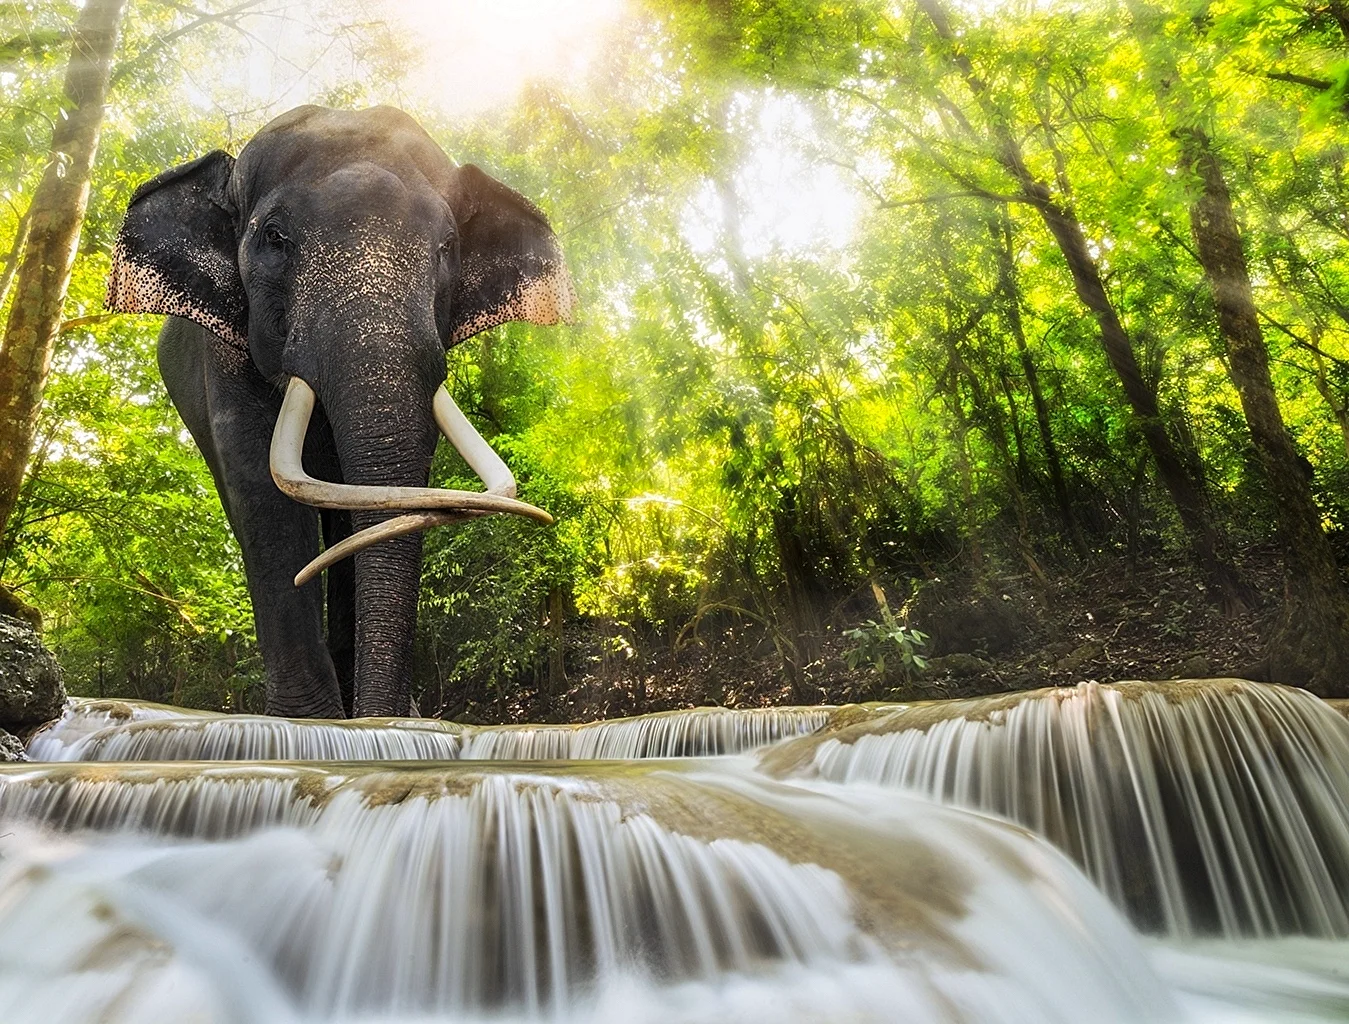 Слоны в джунглях